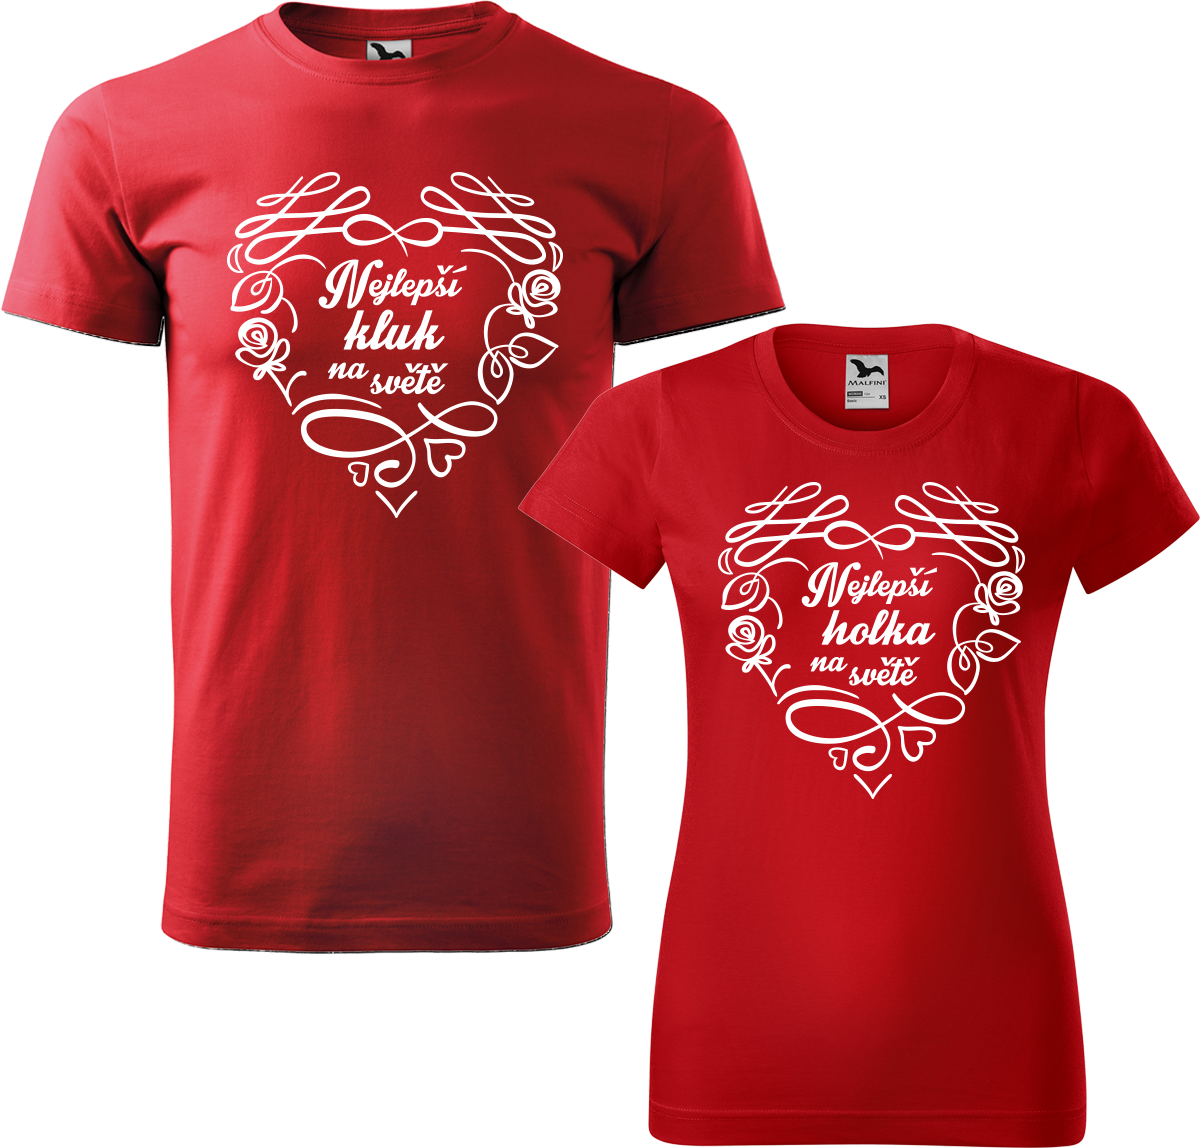 Trička pro páry - Nejlepší kluk / holka na světě Barva: Červená (07), Velikost dámské tričko: S, Velikost pánské tričko: XL